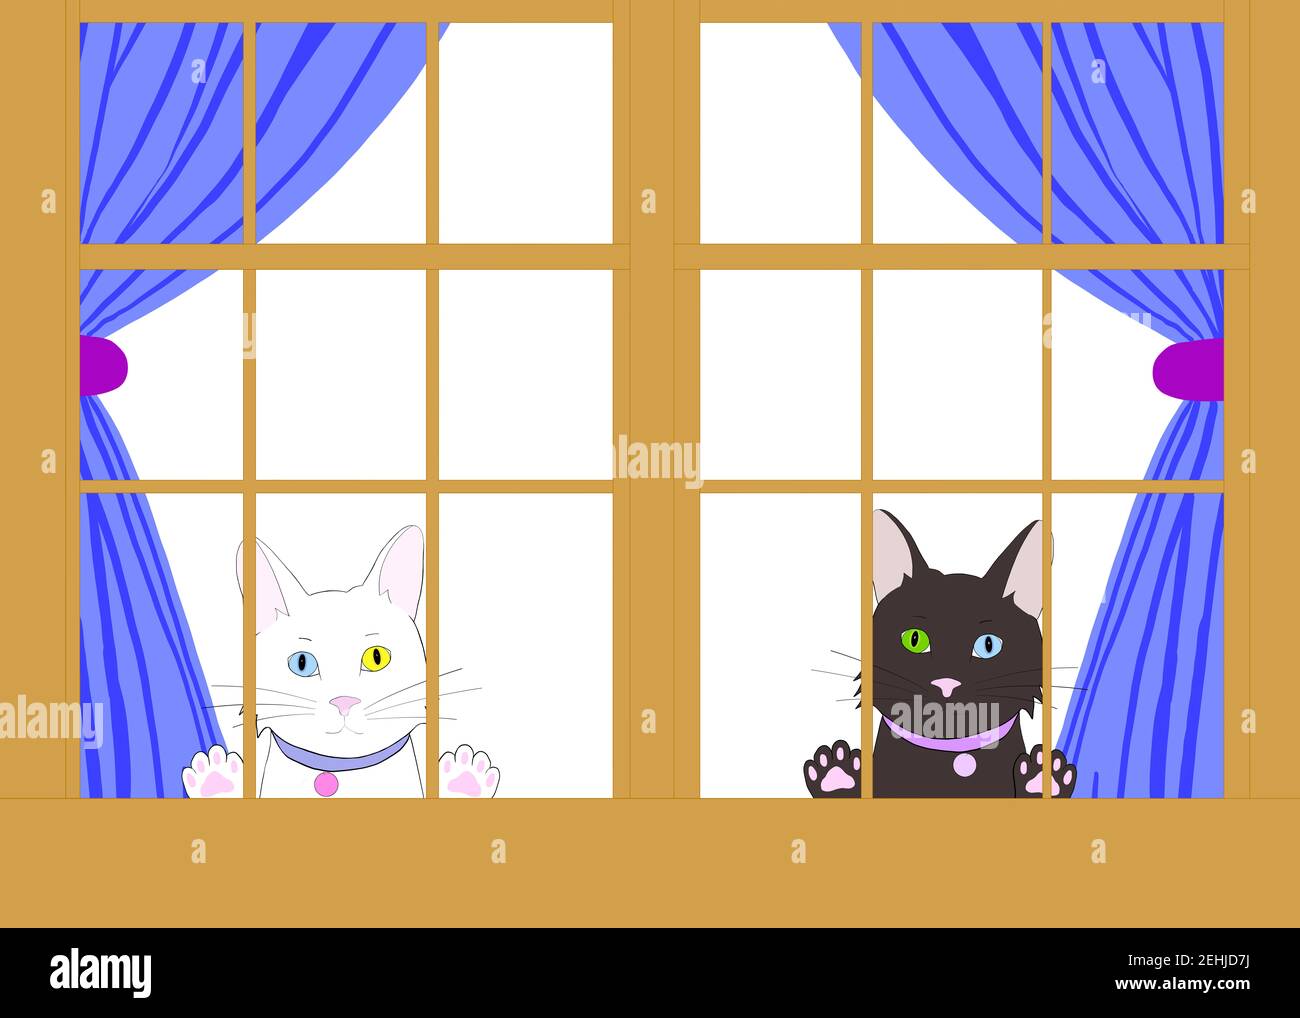 Dessin d'illustration de deux chats de dessins animés avec l'hétérochromie peaking à travers une fenêtre en bois brun avec des pattes sur le verre. Regarder le spectateur longingl Banque D'Images